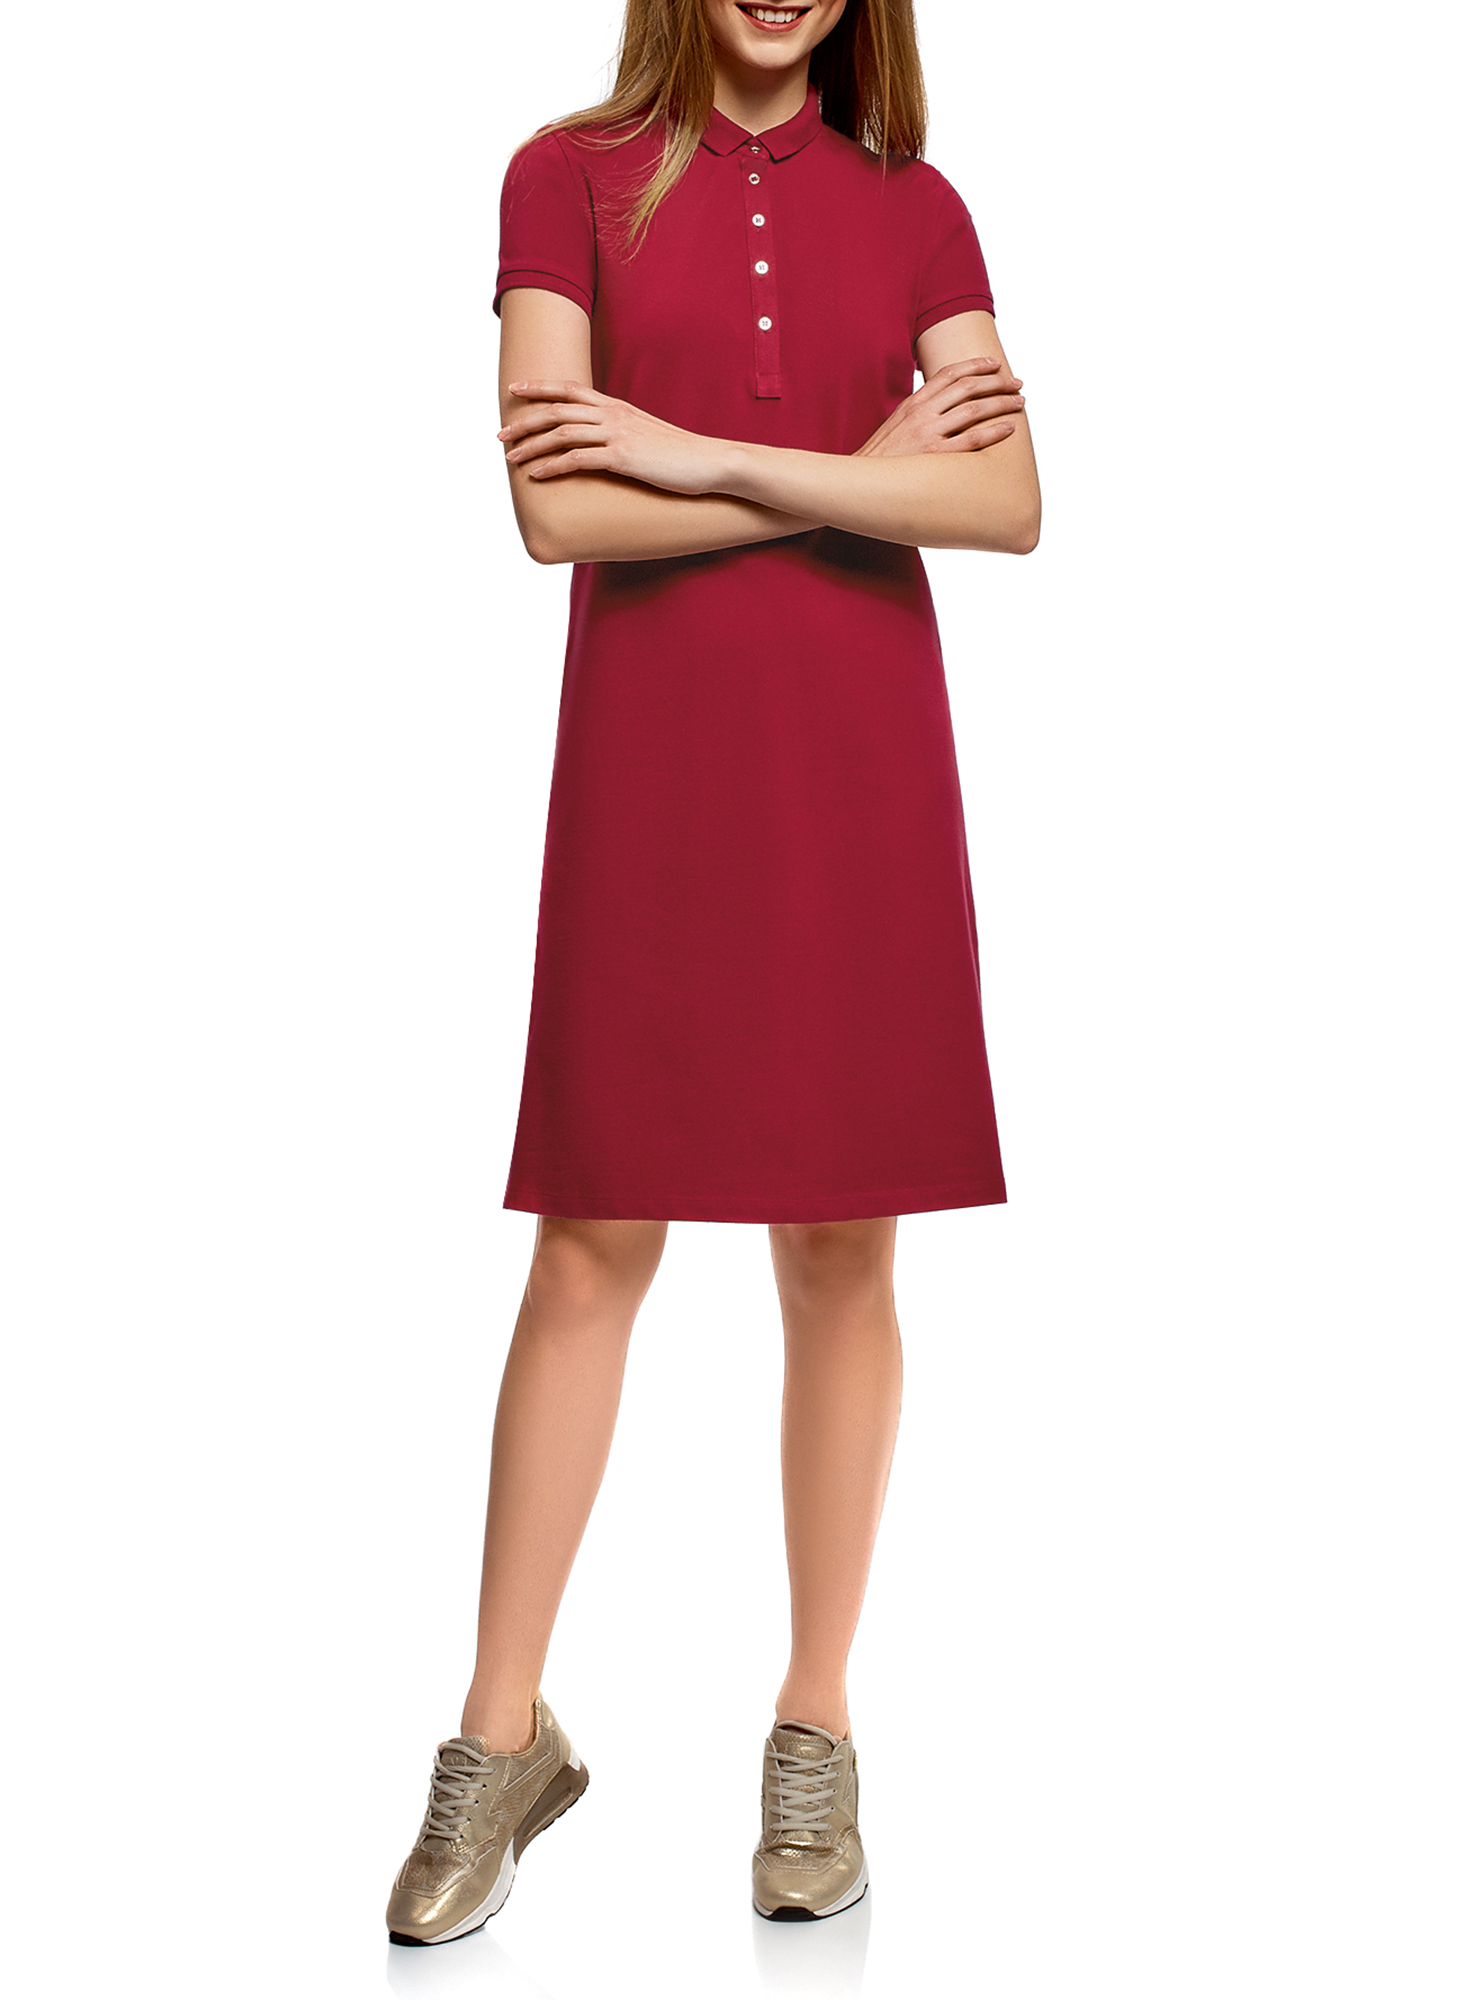 Платье женское oodji 24001118-4B красное XS